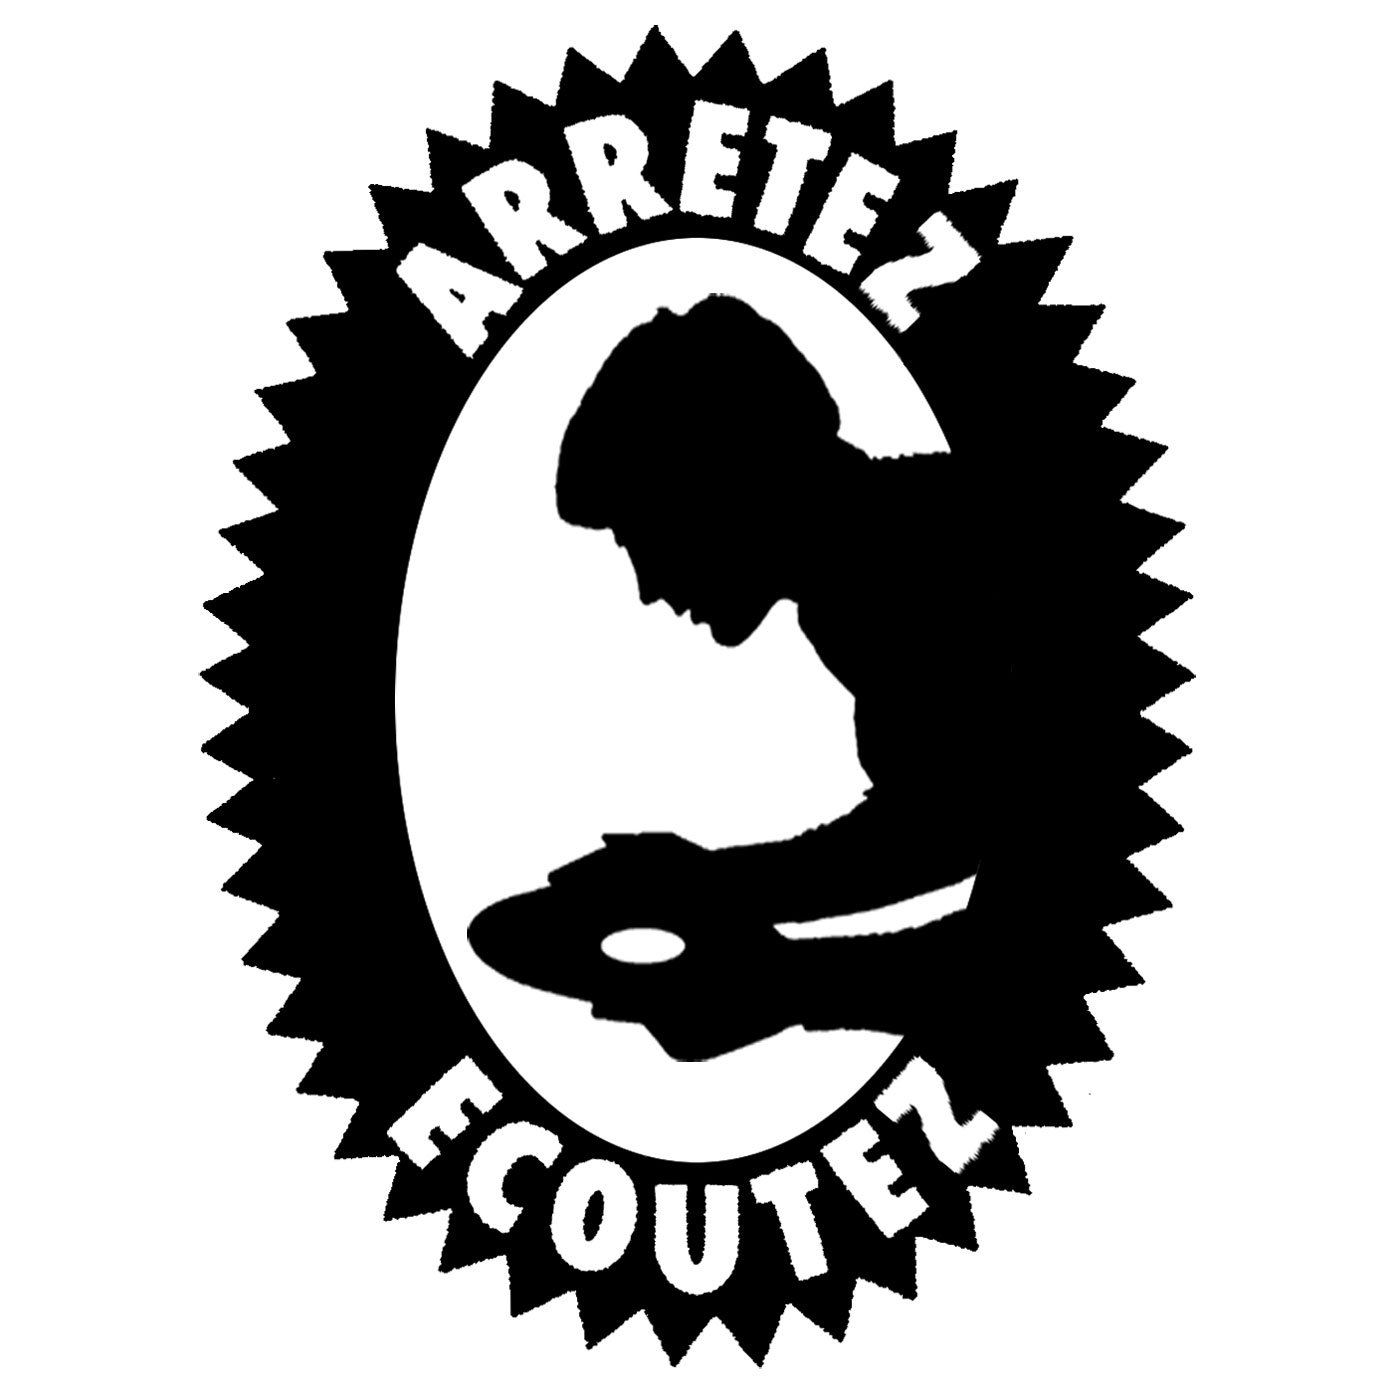 ARRETEZ ECOUTEZ logo.